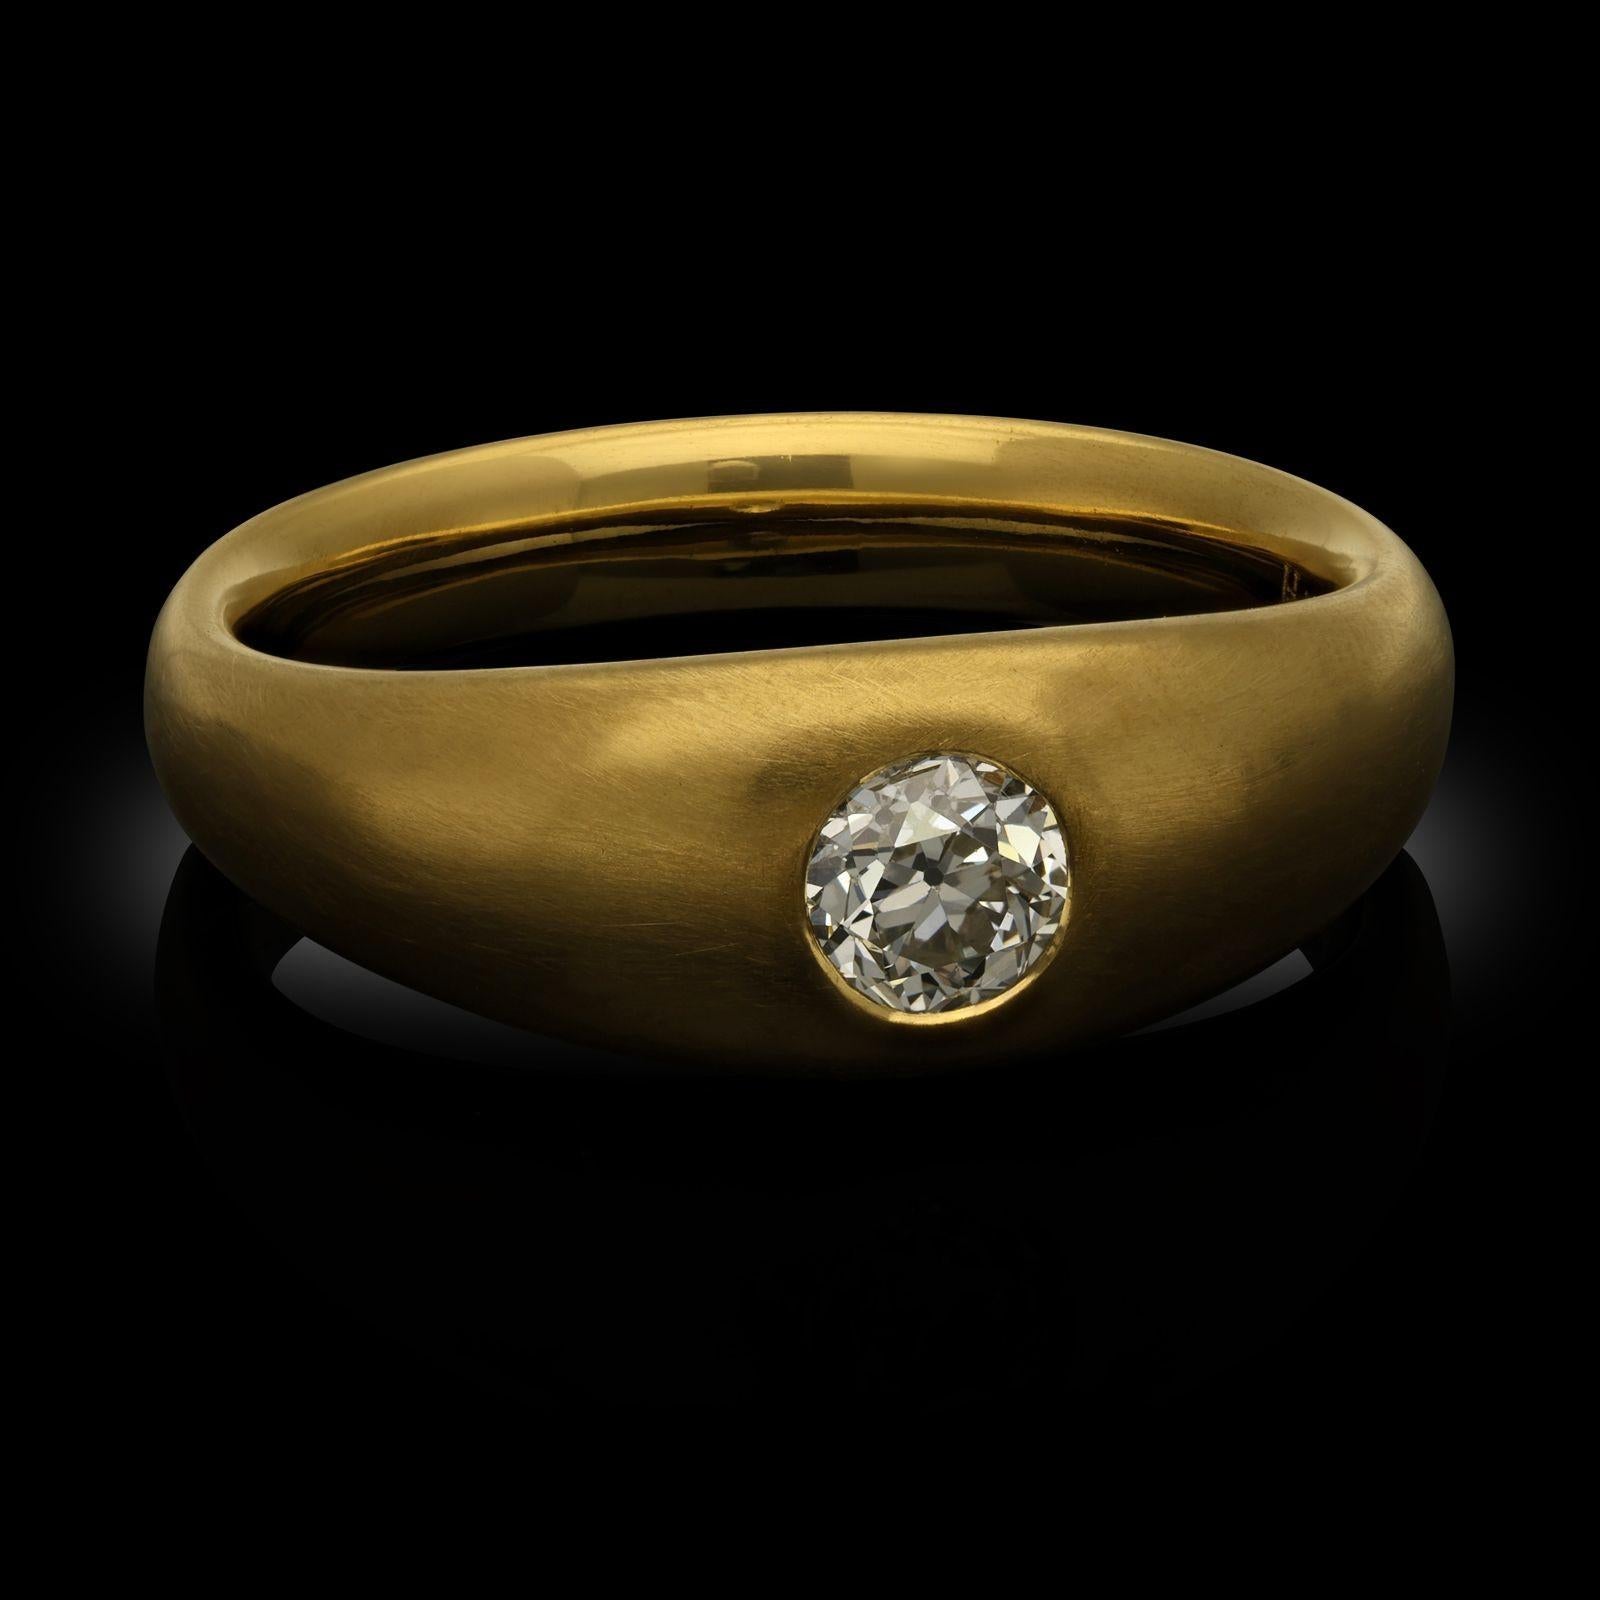 Ein Ring von Hancocks mit Diamanten im alten Schliff und Gelbgoldband. Der Ring ist in der Mitte mit einem Diamanten im alten europäischen Schliff mit einem Gewicht von 0,54 Karat besetzt, der bündig in einer Fassung im Zigeunerstil in einem